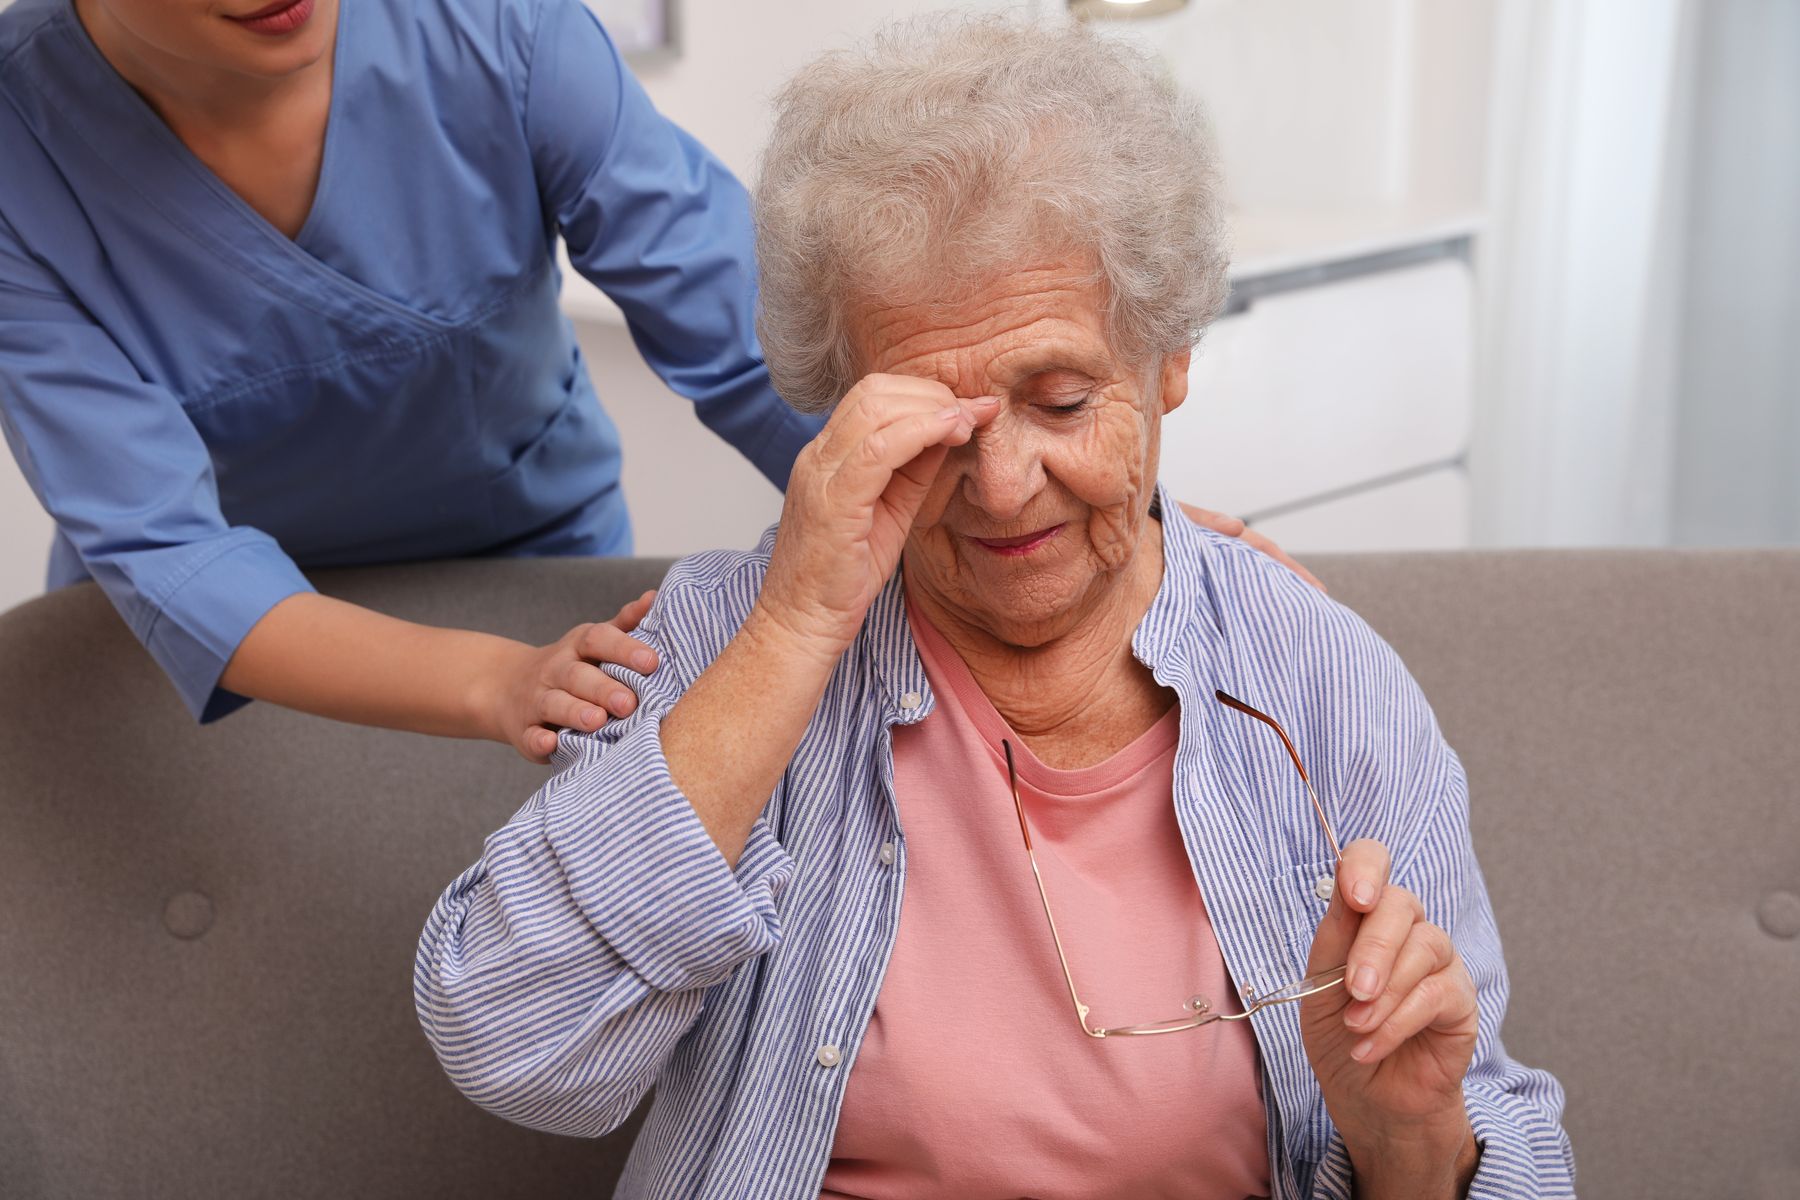 Personnes âgées souffrant de perte de mémoire les avantages des routines quotidiennes pour retrouver ses repères